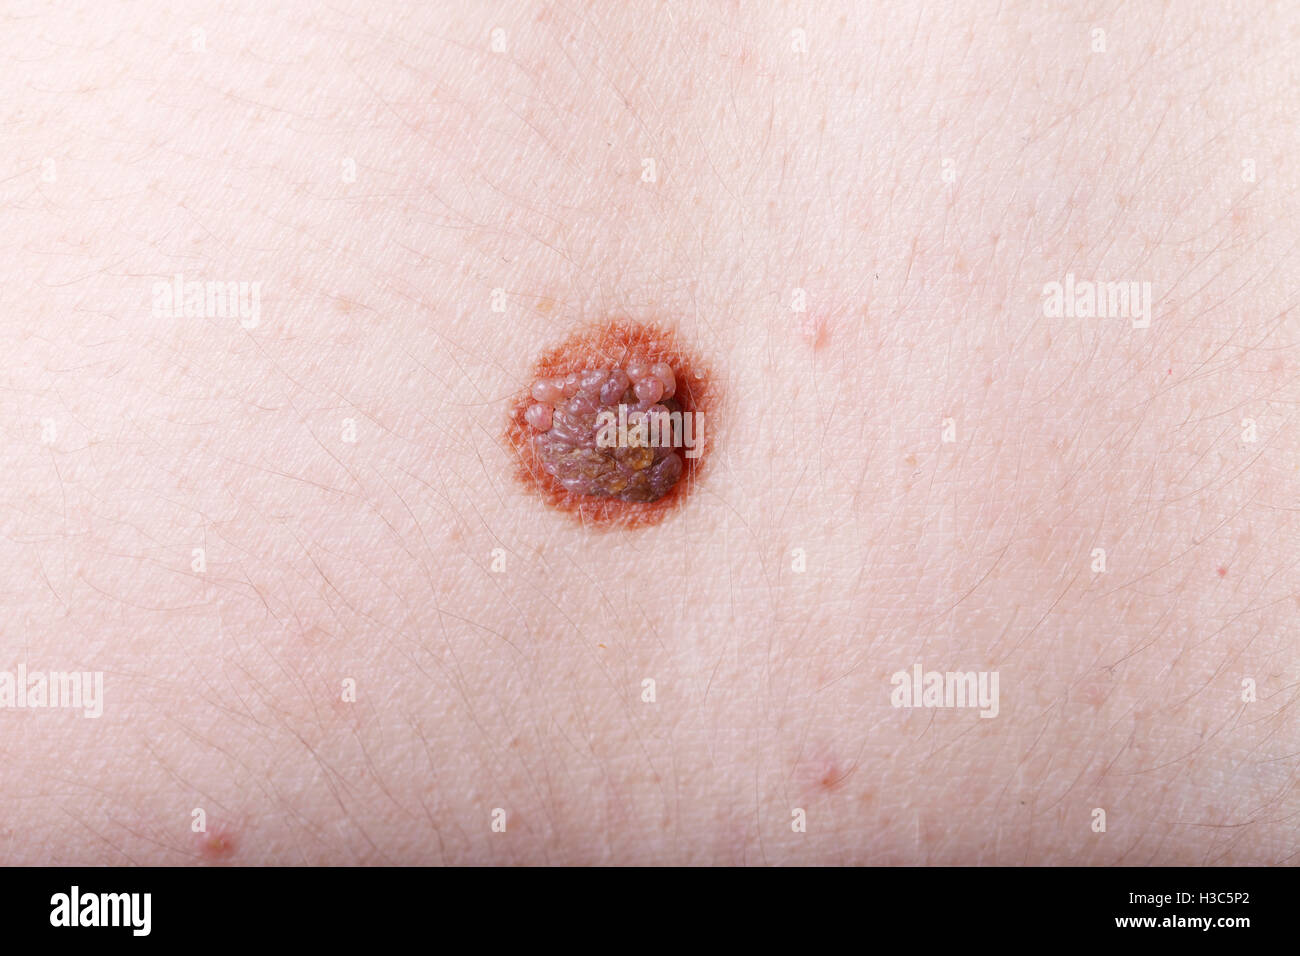 Una grande mole sul corpo di una donna, close-up, Medicina, salute Foto Stock